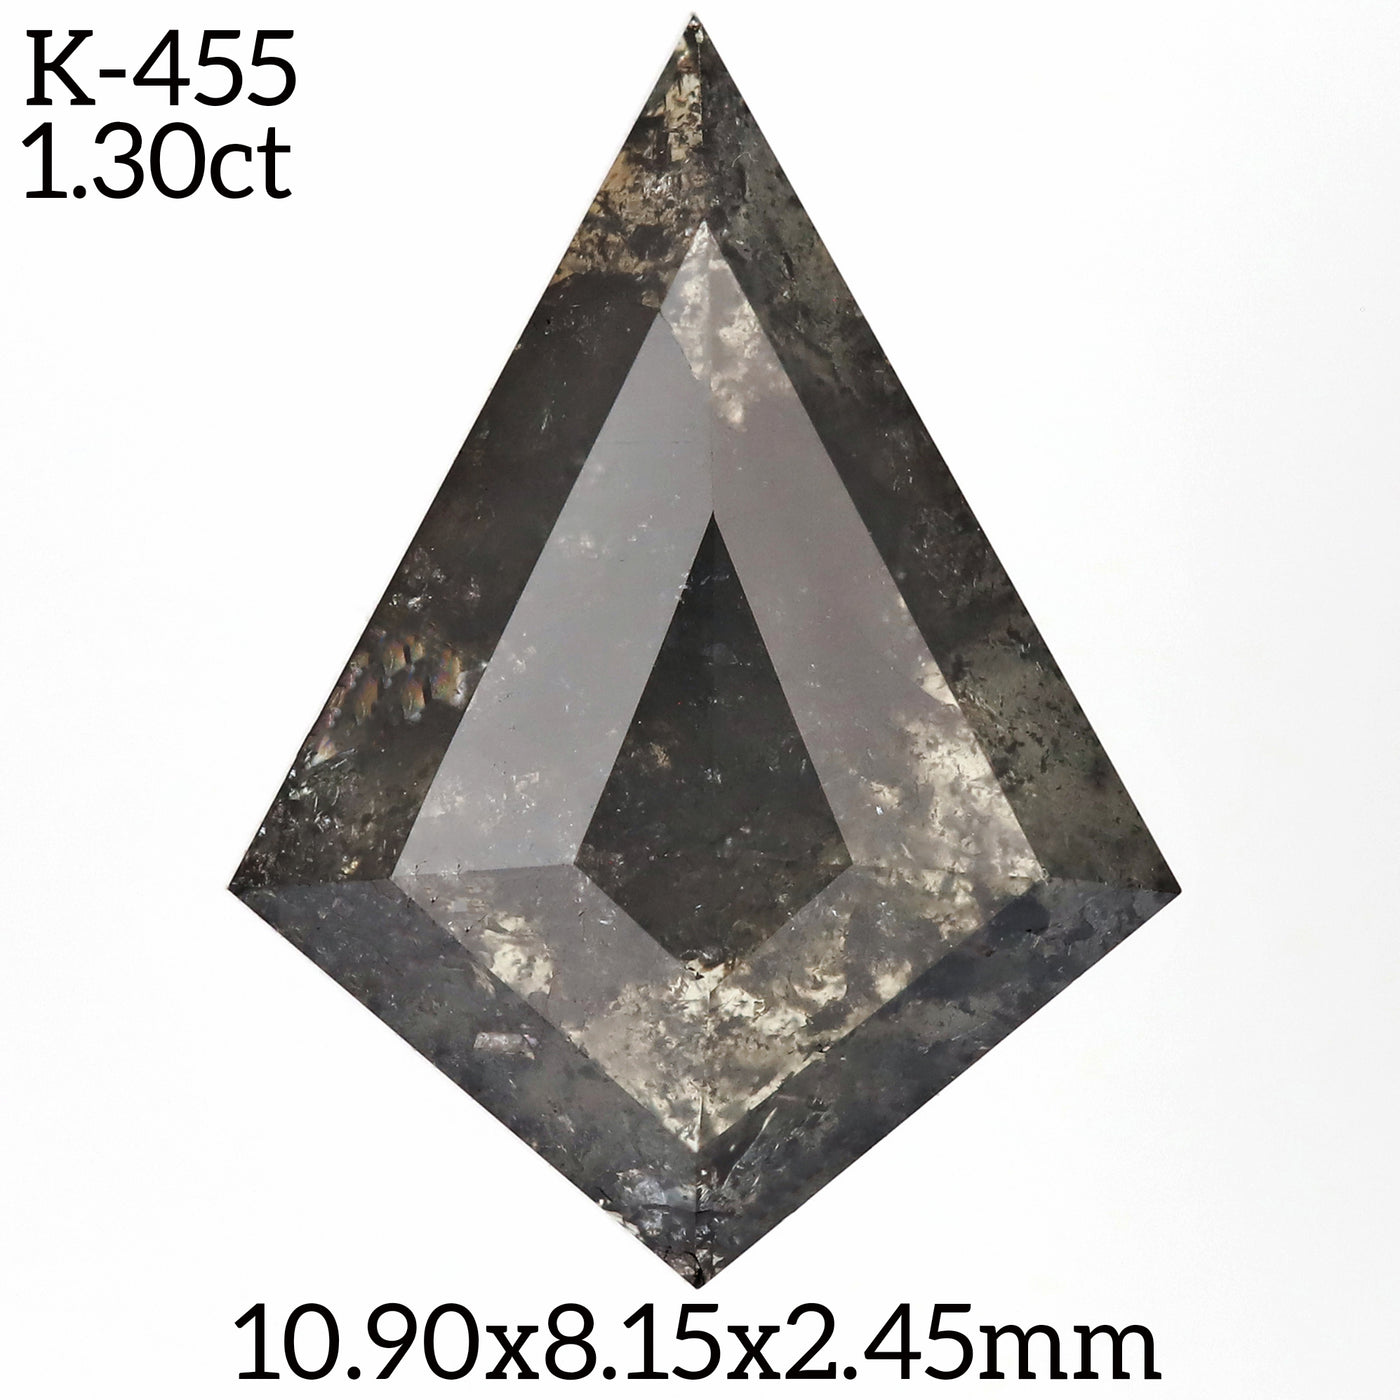 K455 - Salt and pepper kite diamond